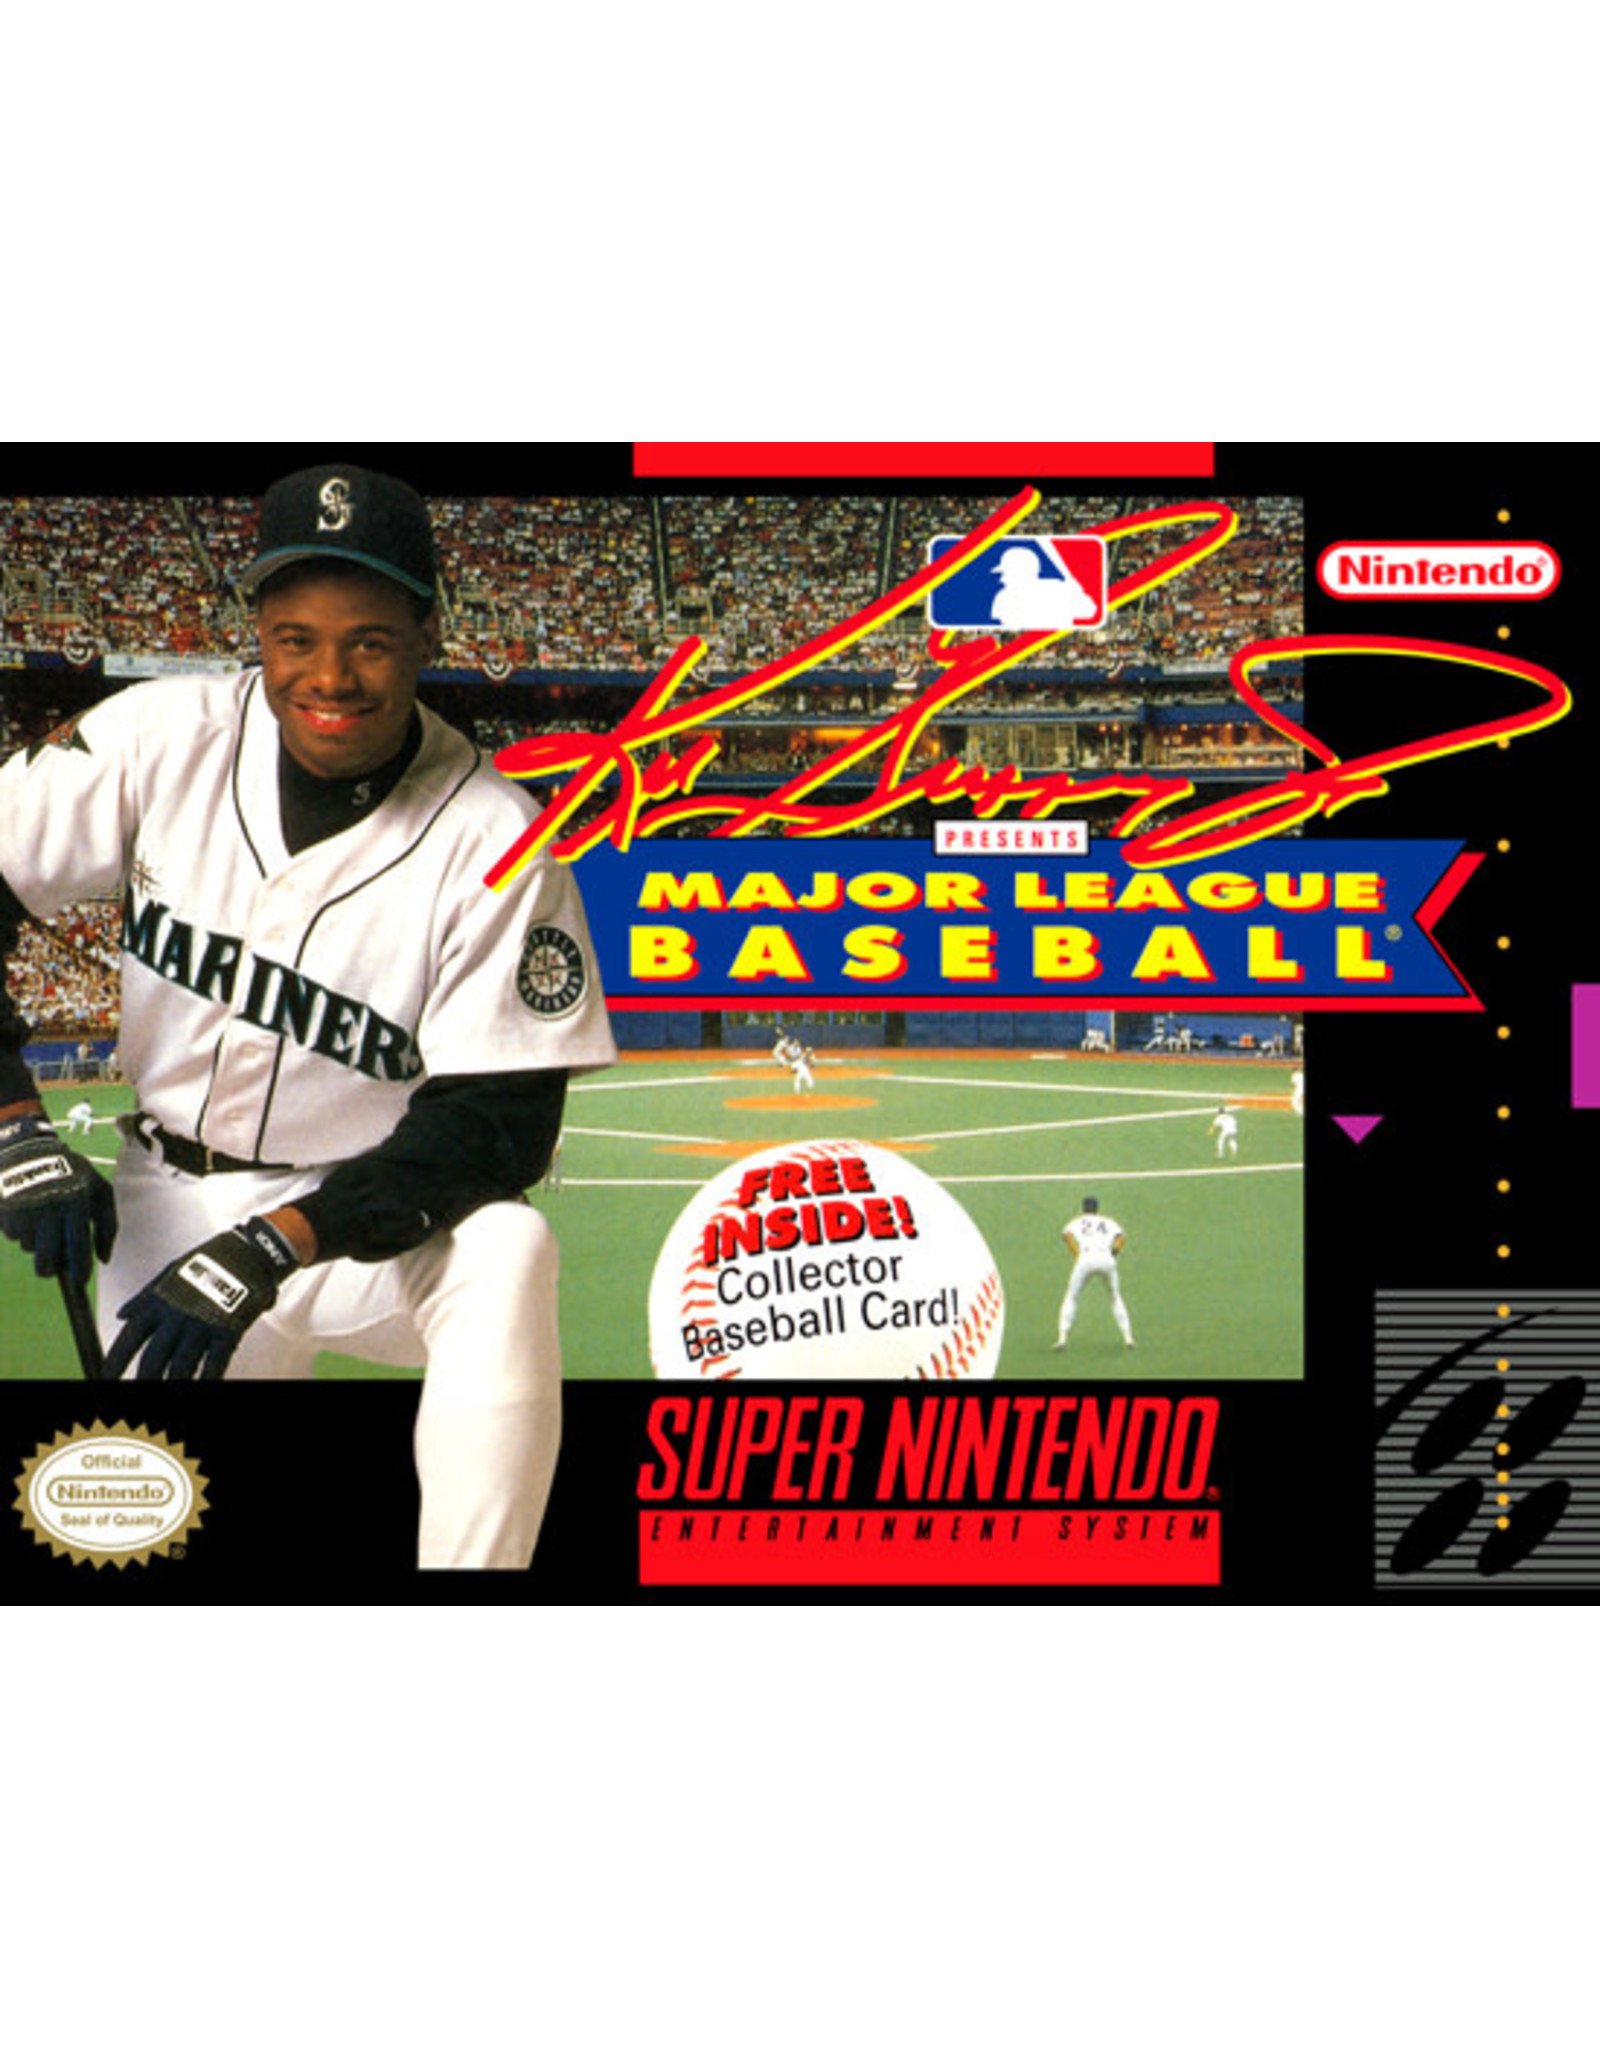 Super Nintendo Ken Griffey Jr Major League Baseball (Cart Only, Discolored Cart)